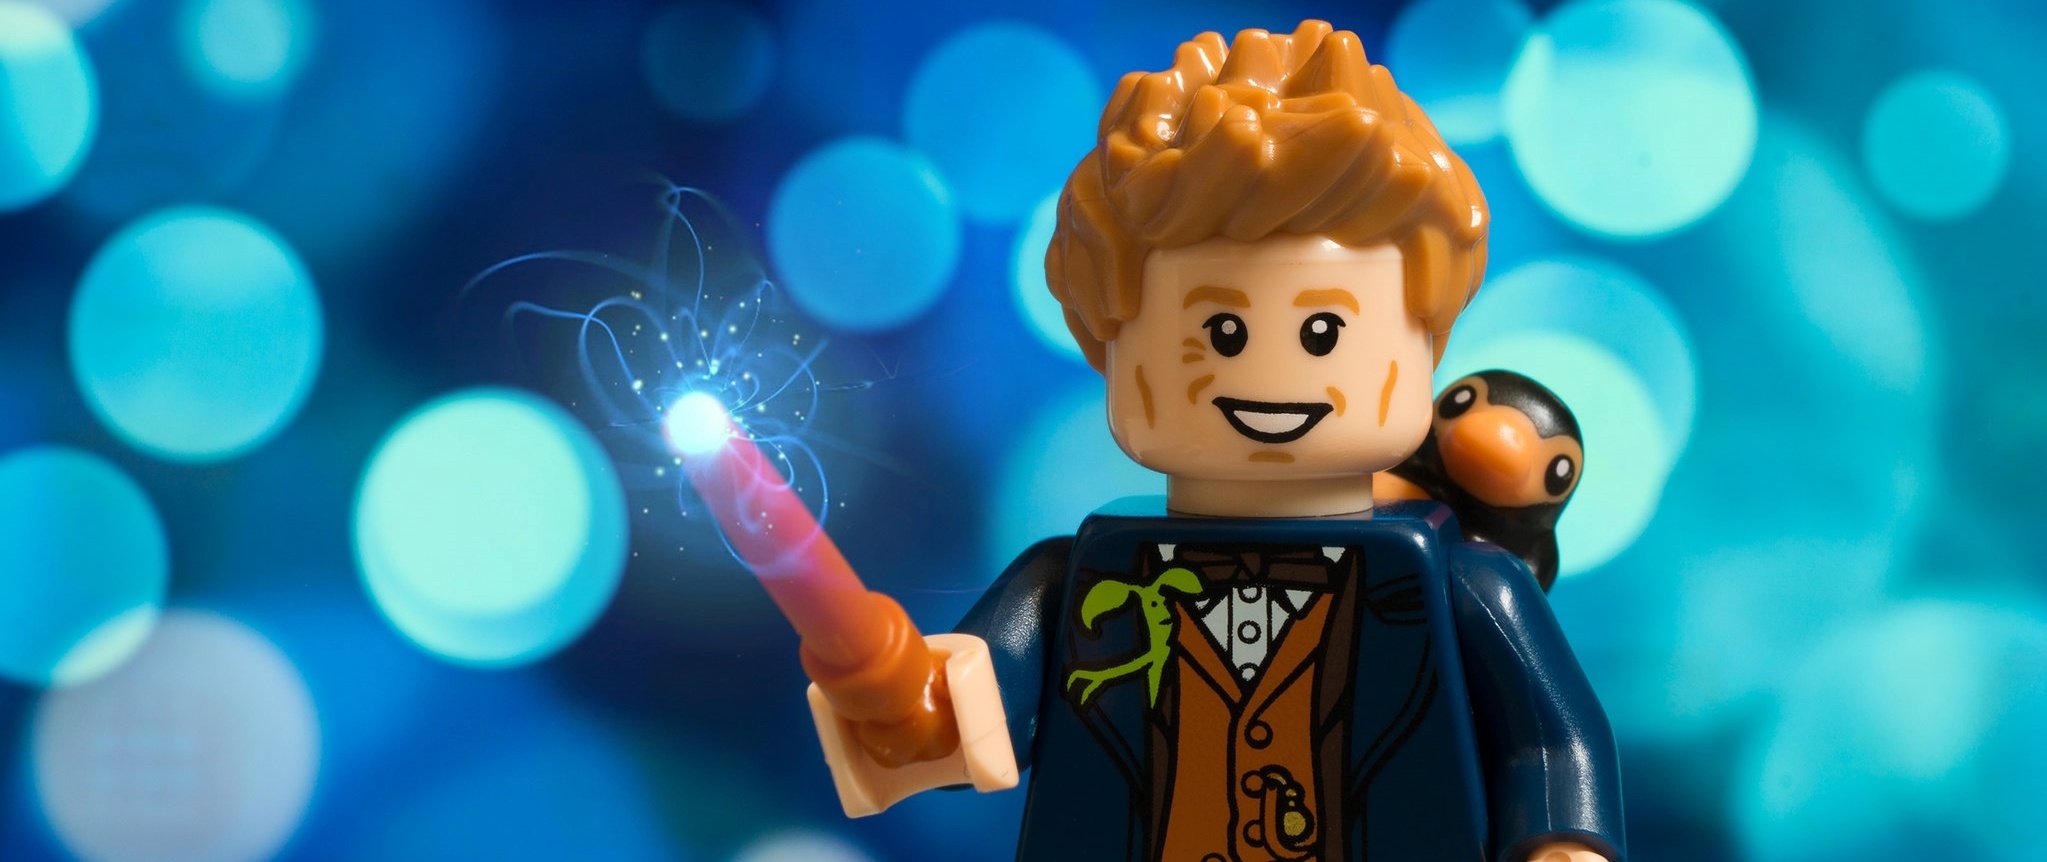 A LEGO Wizard